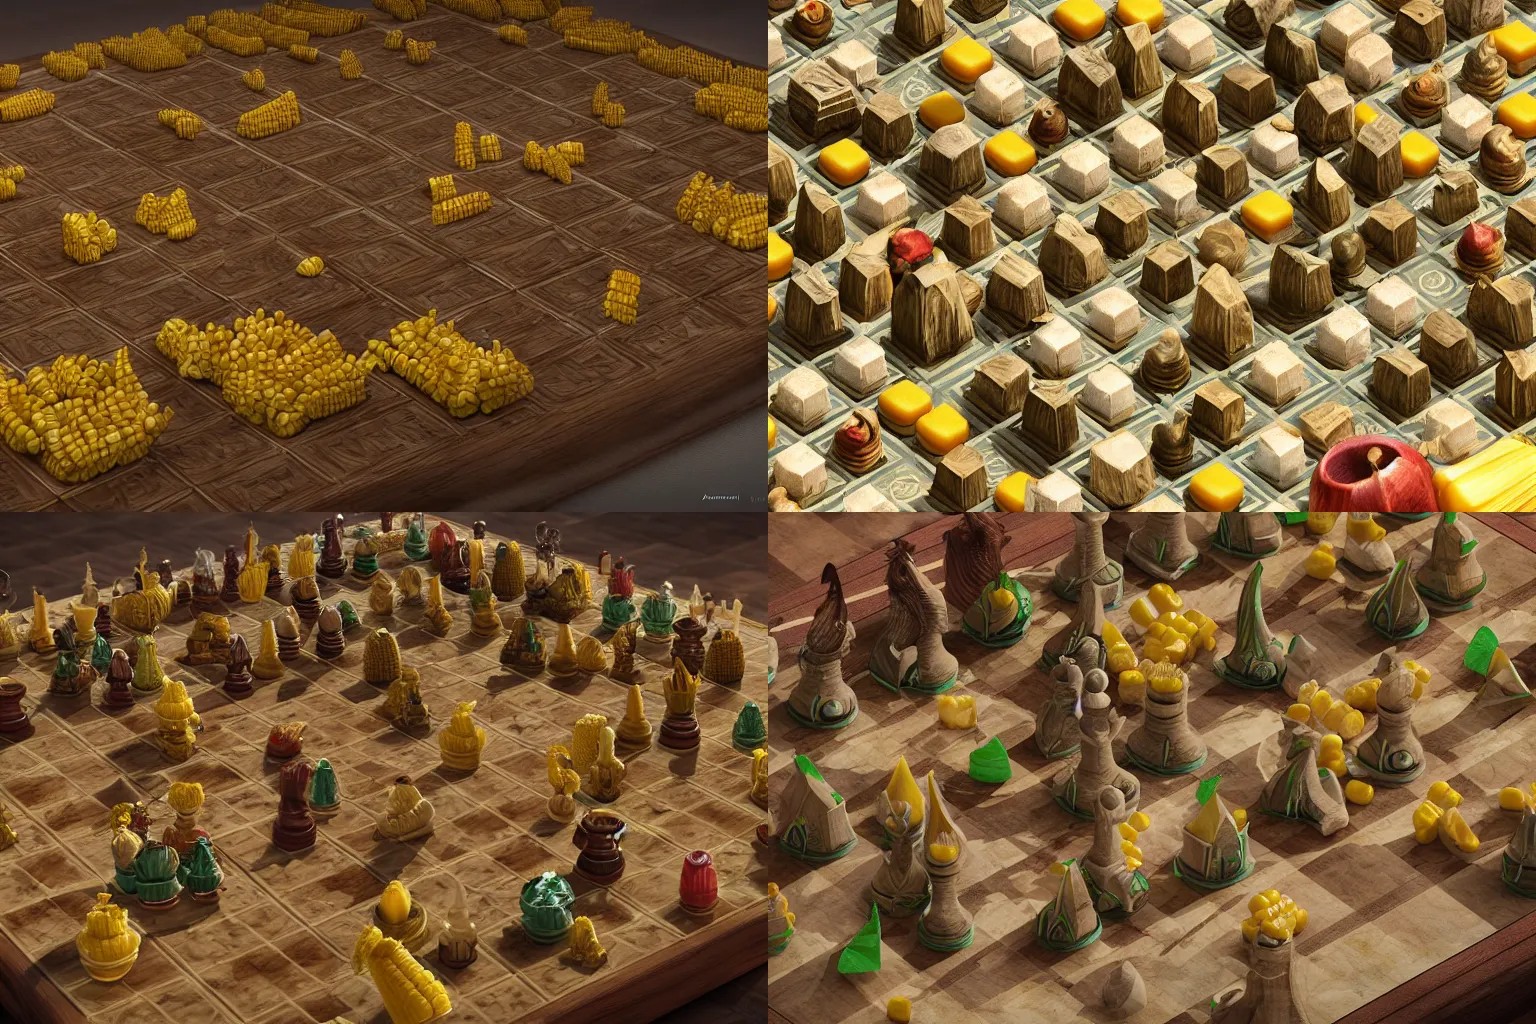 Prompt: corn chess board game, detailed octane render, trending on artstation